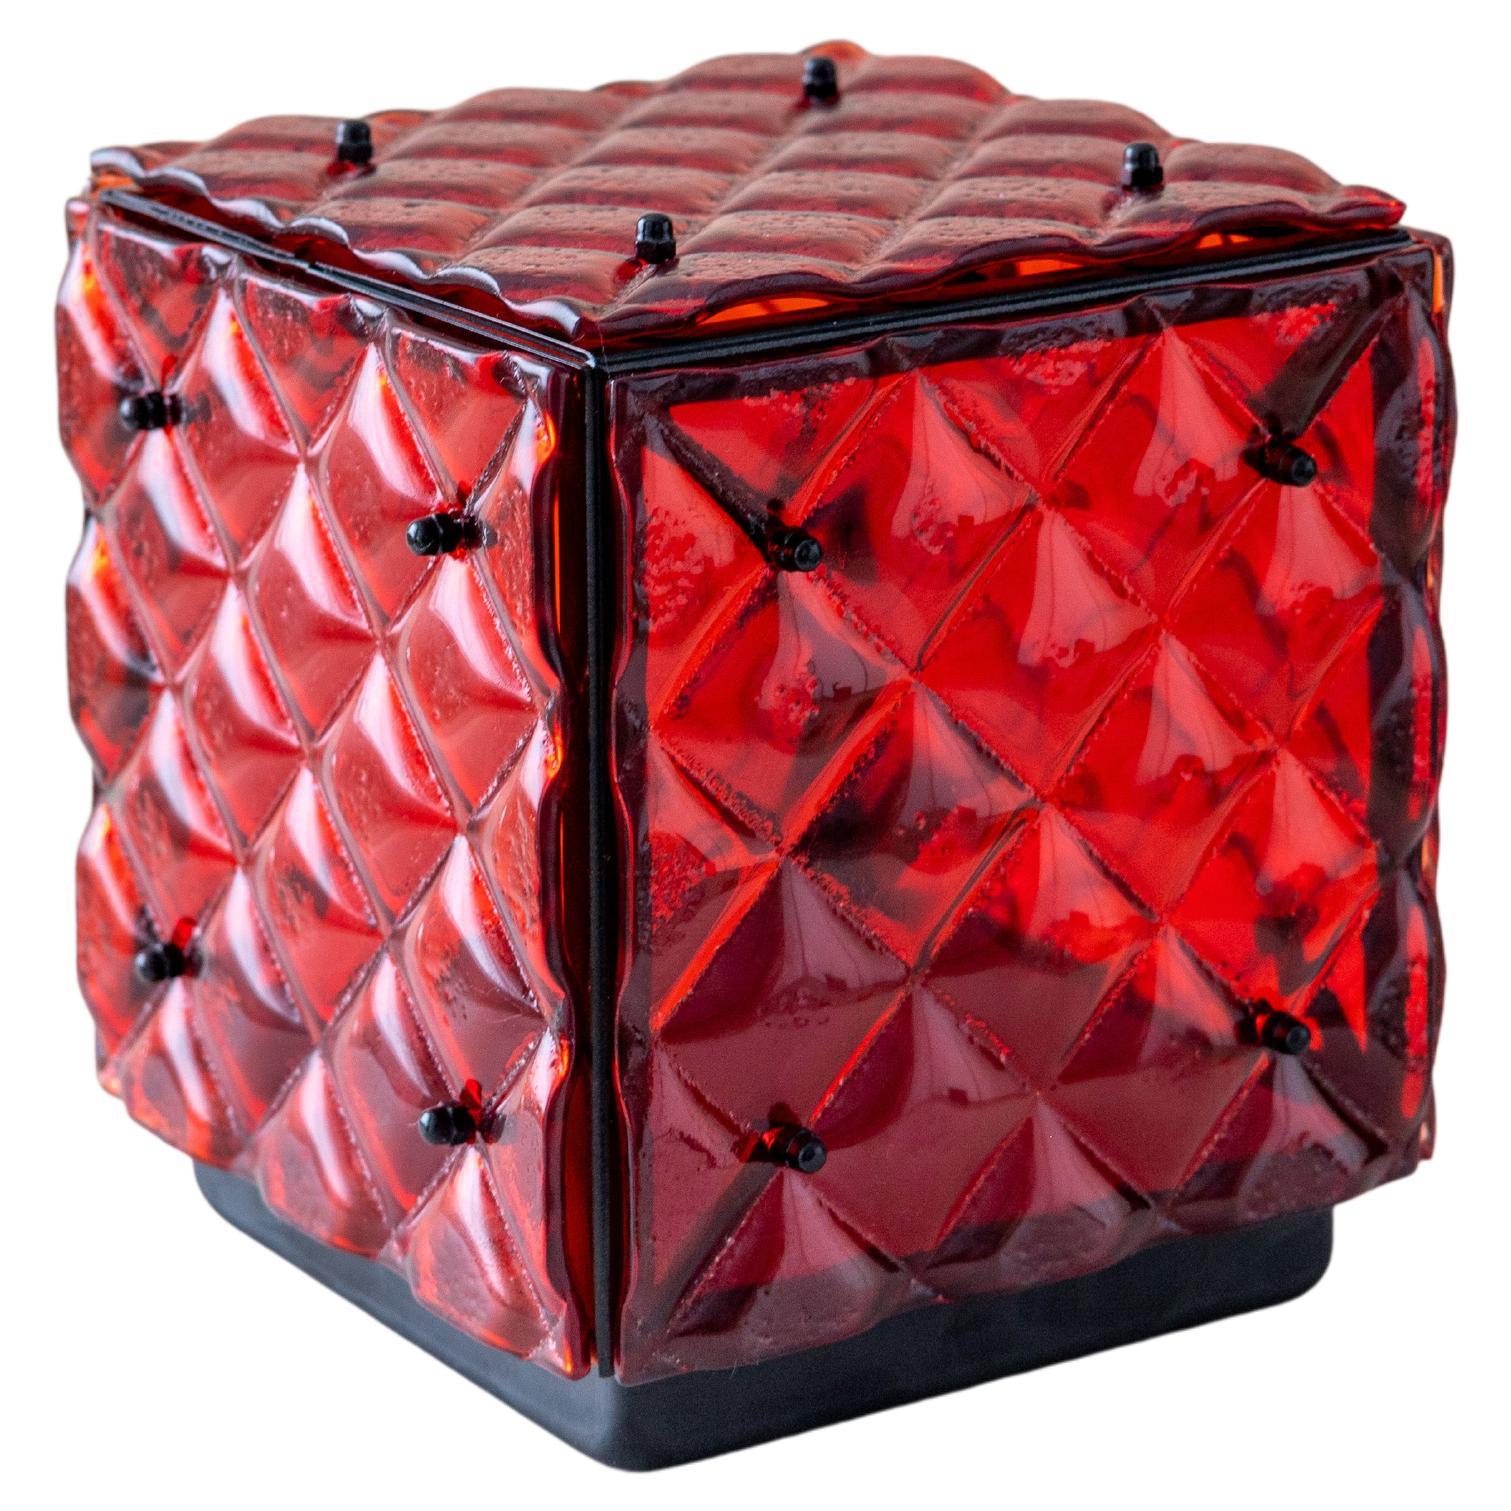 Lampe cubique en verre rouge Ambient Light Verre fusionné artisanal Design Contemporary